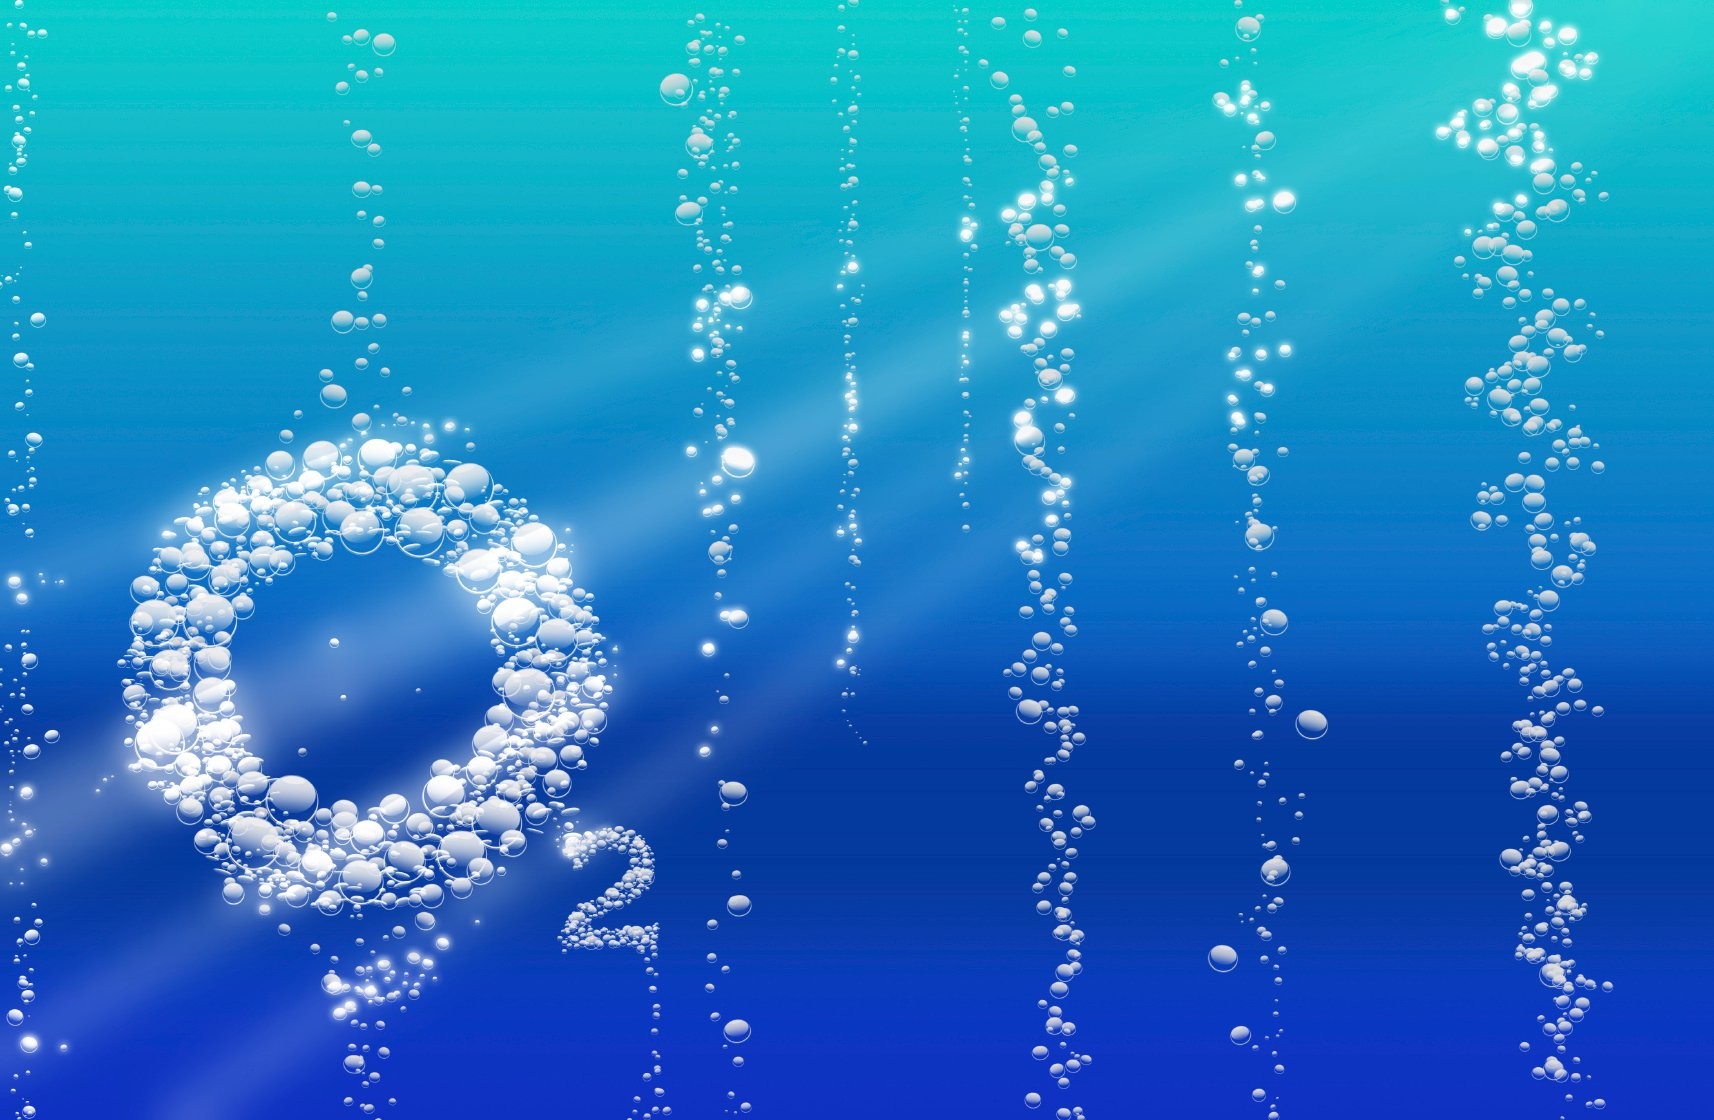 Oxy hoà tan hlà một lượng các phân tử oxy tự do có ở trong nước